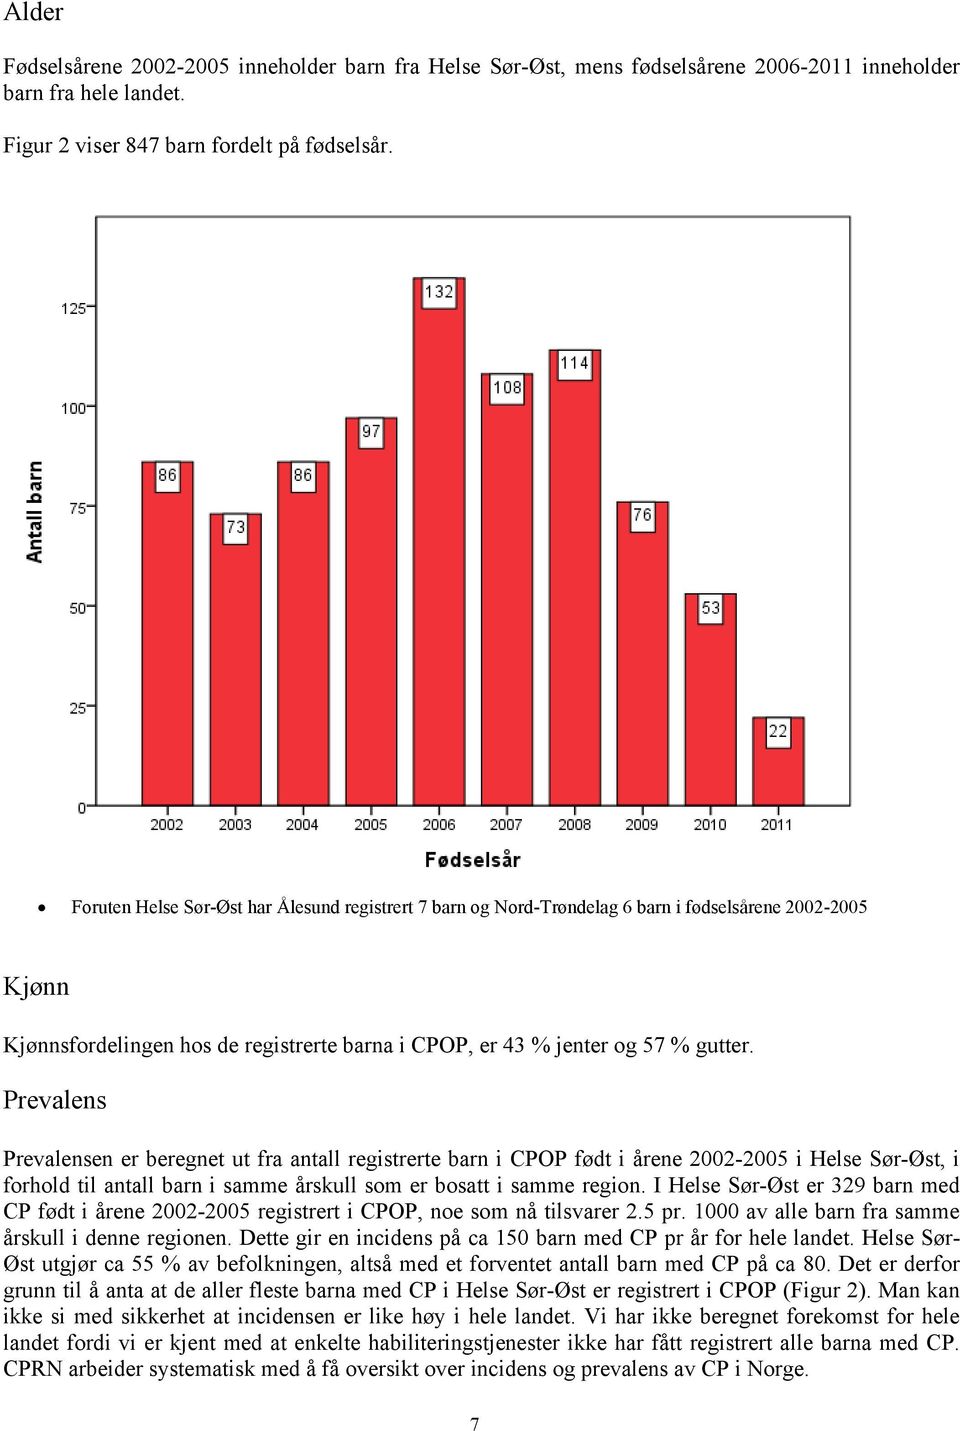 Prevalens Prevalensen er beregnet ut fra antall registrerte barn i CPOP født i årene 2002-2005 i Helse Sør-Øst, i forhold til antall barn i samme årskull som er bosatt i samme region.